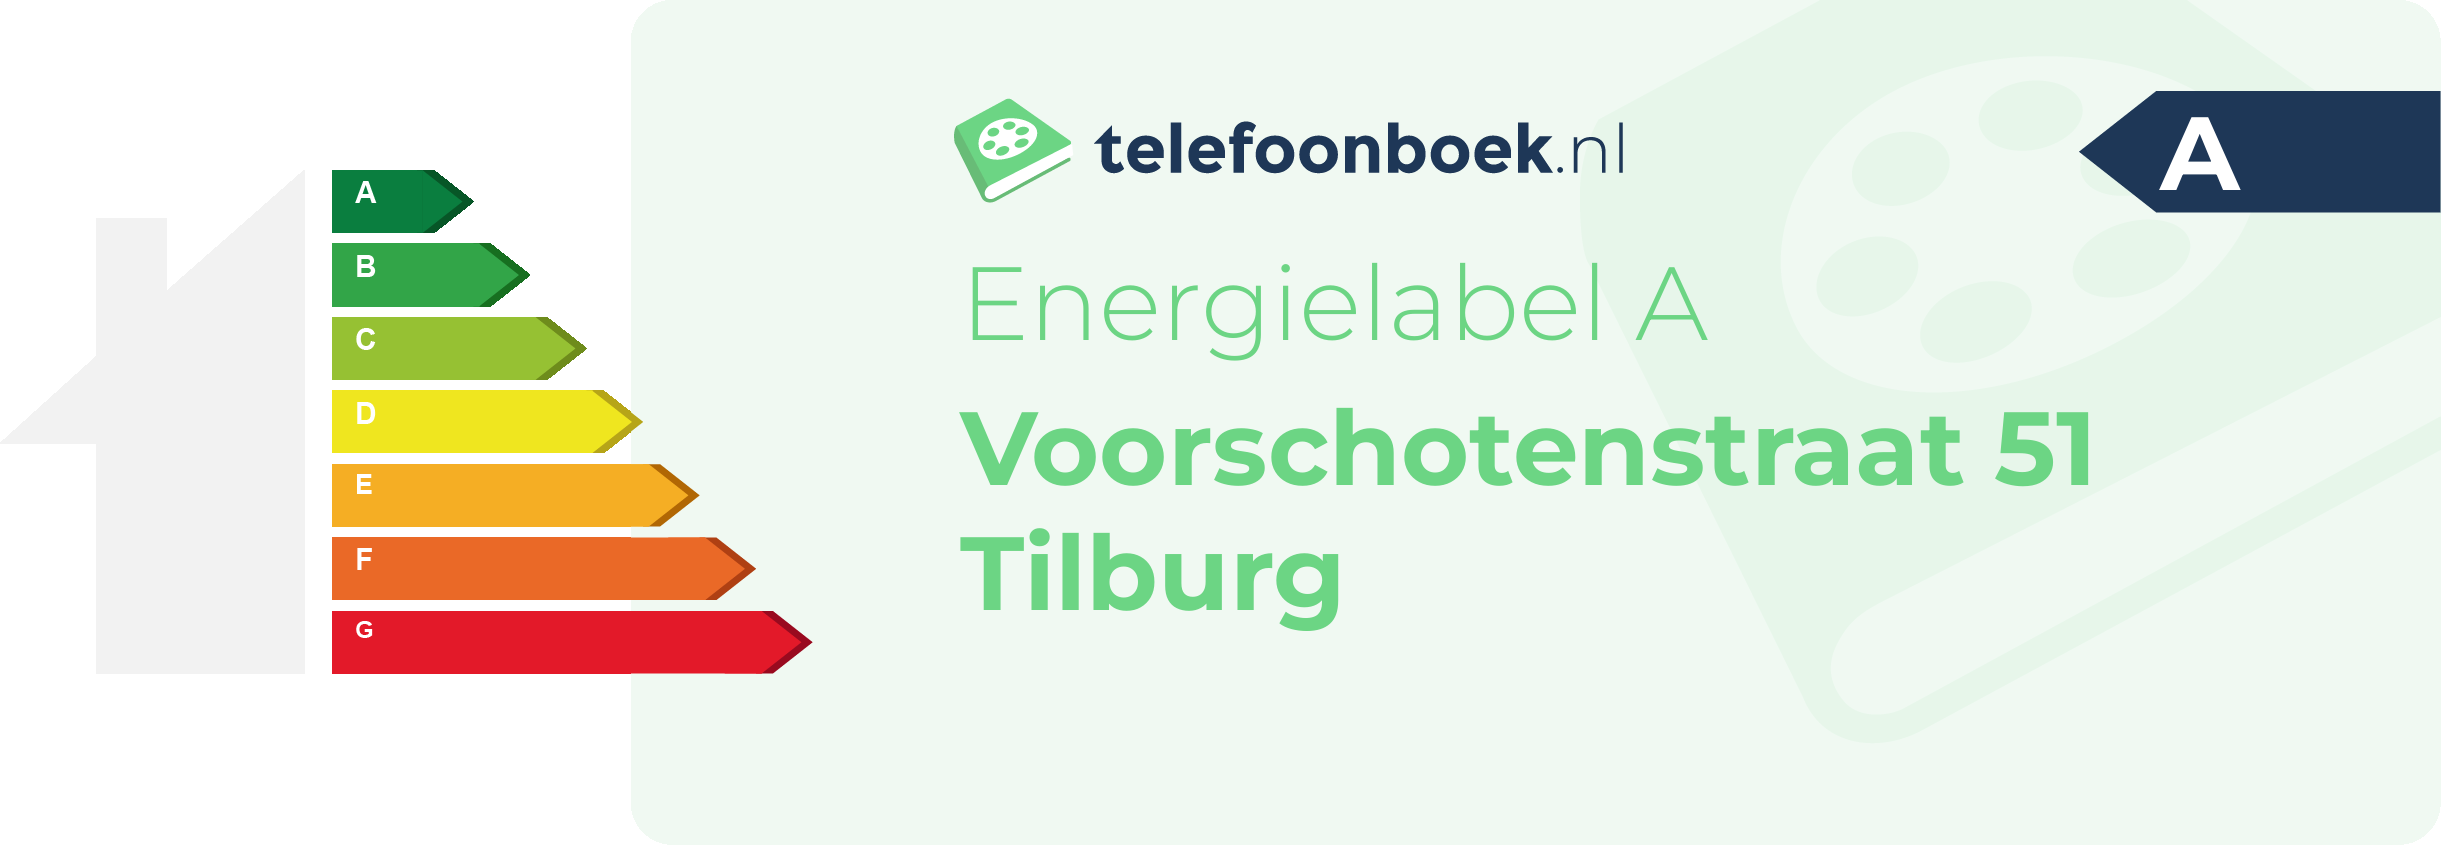 Energielabel Voorschotenstraat 51 Tilburg